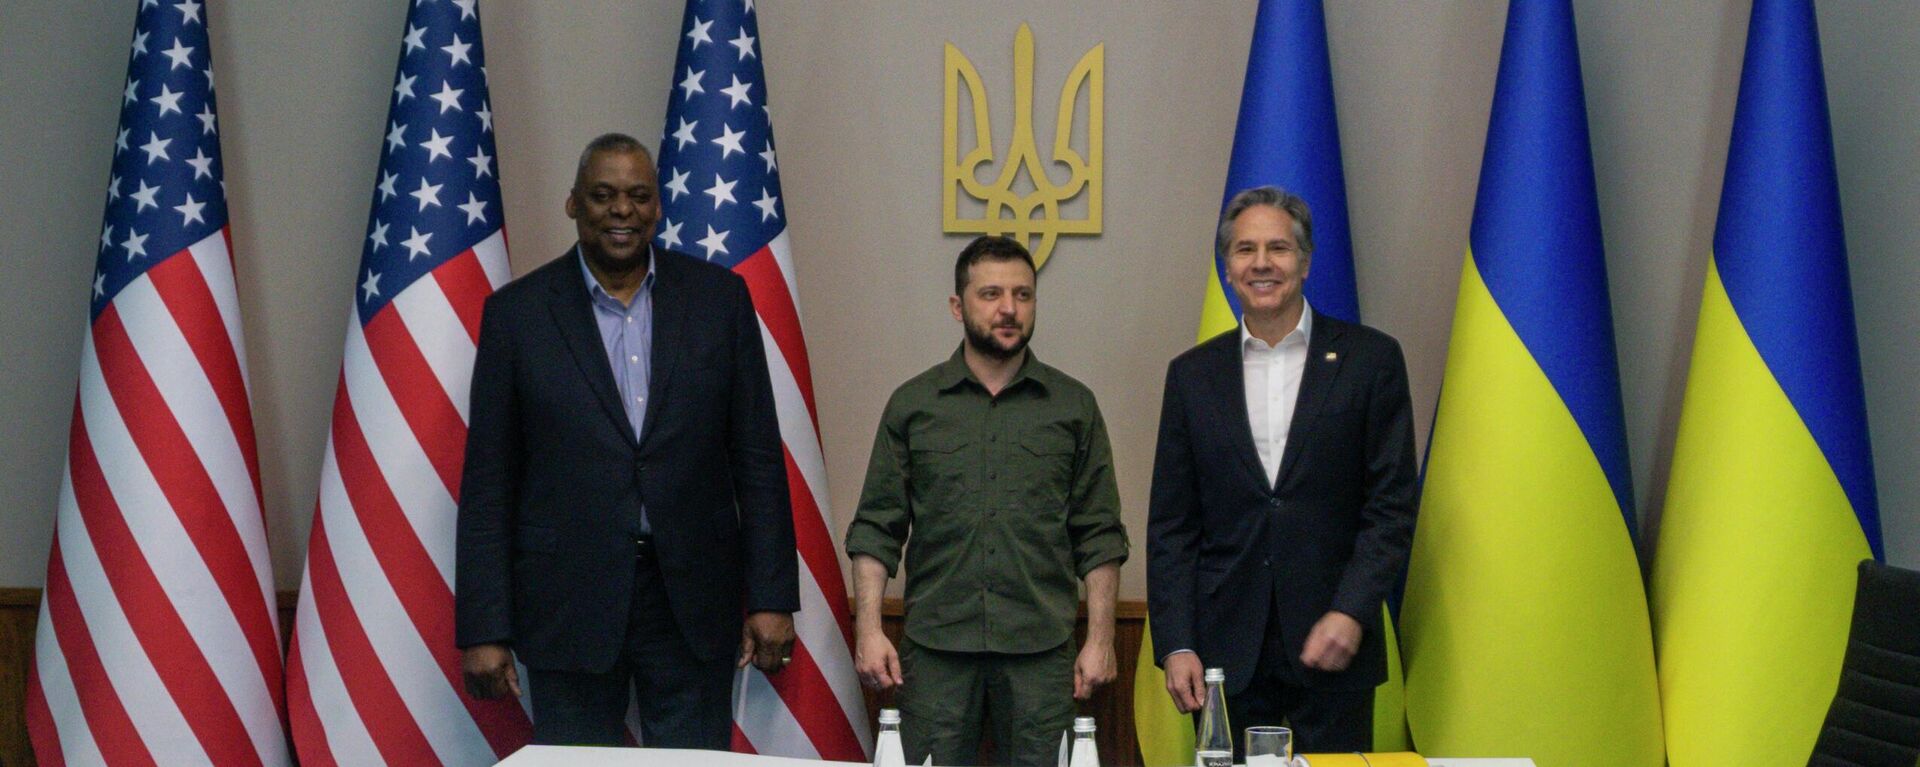 Bộ trưởng Quốc phòng Hoa Kỳ Lloyd Austin, Tổng thống Ukraina Volodymyr Zelensky và Ngoại trưởng Hoa Kỳ Anthony Blinken trong cuộc gặp ở Kyiv - Sputnik Việt Nam, 1920, 25.04.2022